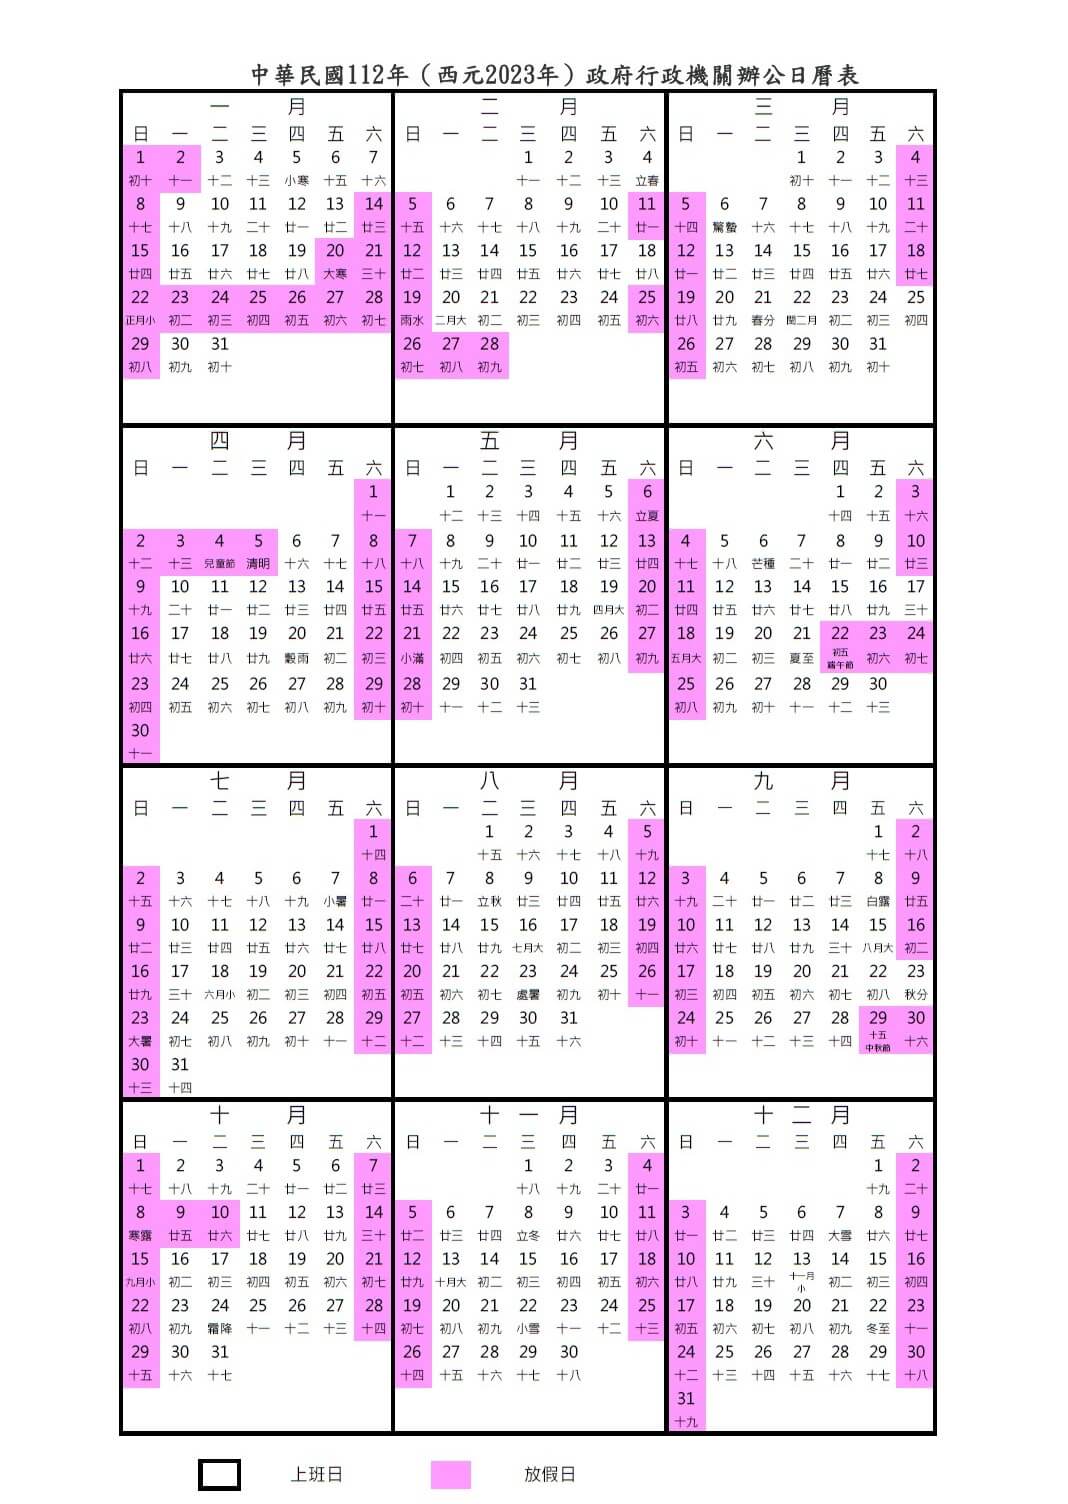 2023行事曆總放假天數116天，3天以上連續假期更多達8個。